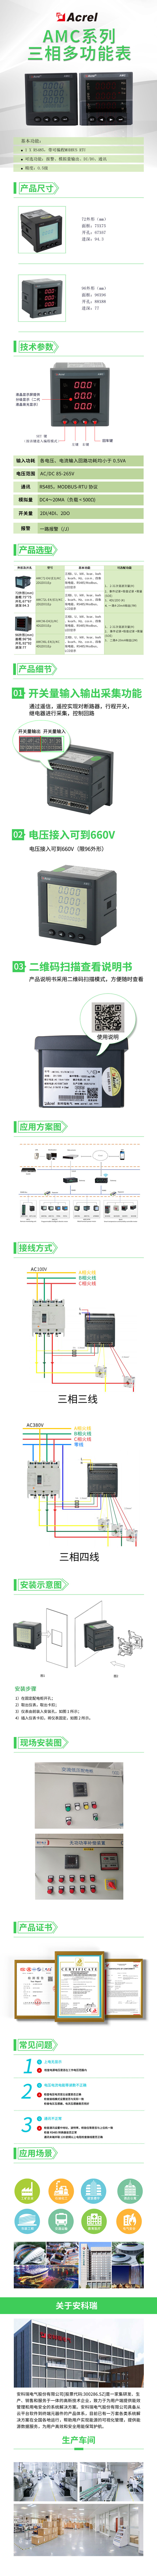 安科瑞AMC96L-E4/KC 660V电压接入多功能电表示例图1